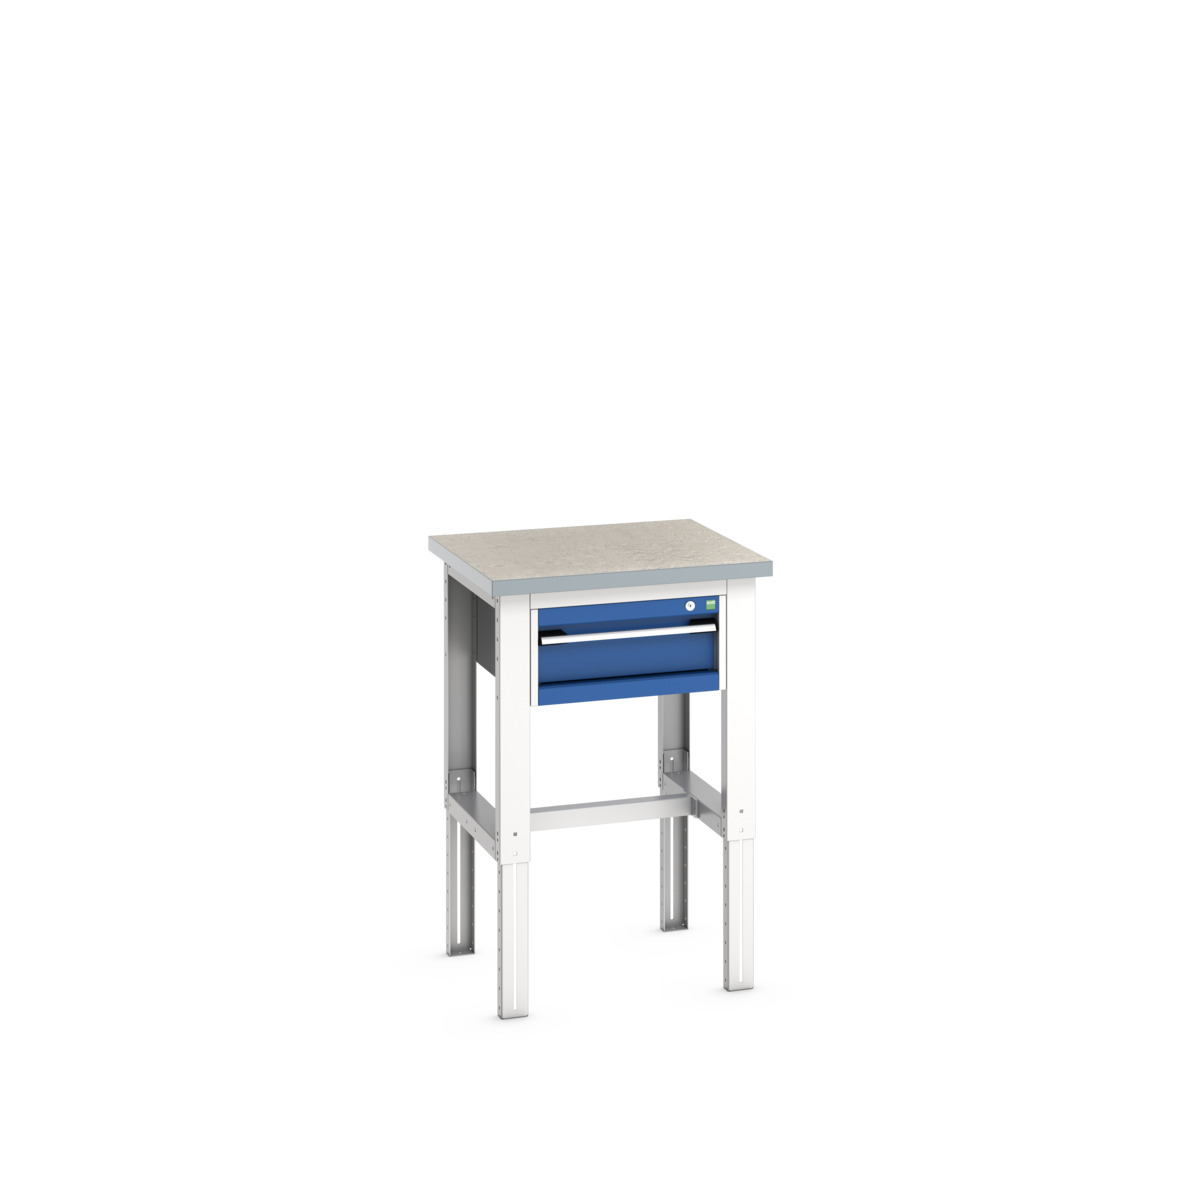 41003532.11V - cubio framework bench (lino)